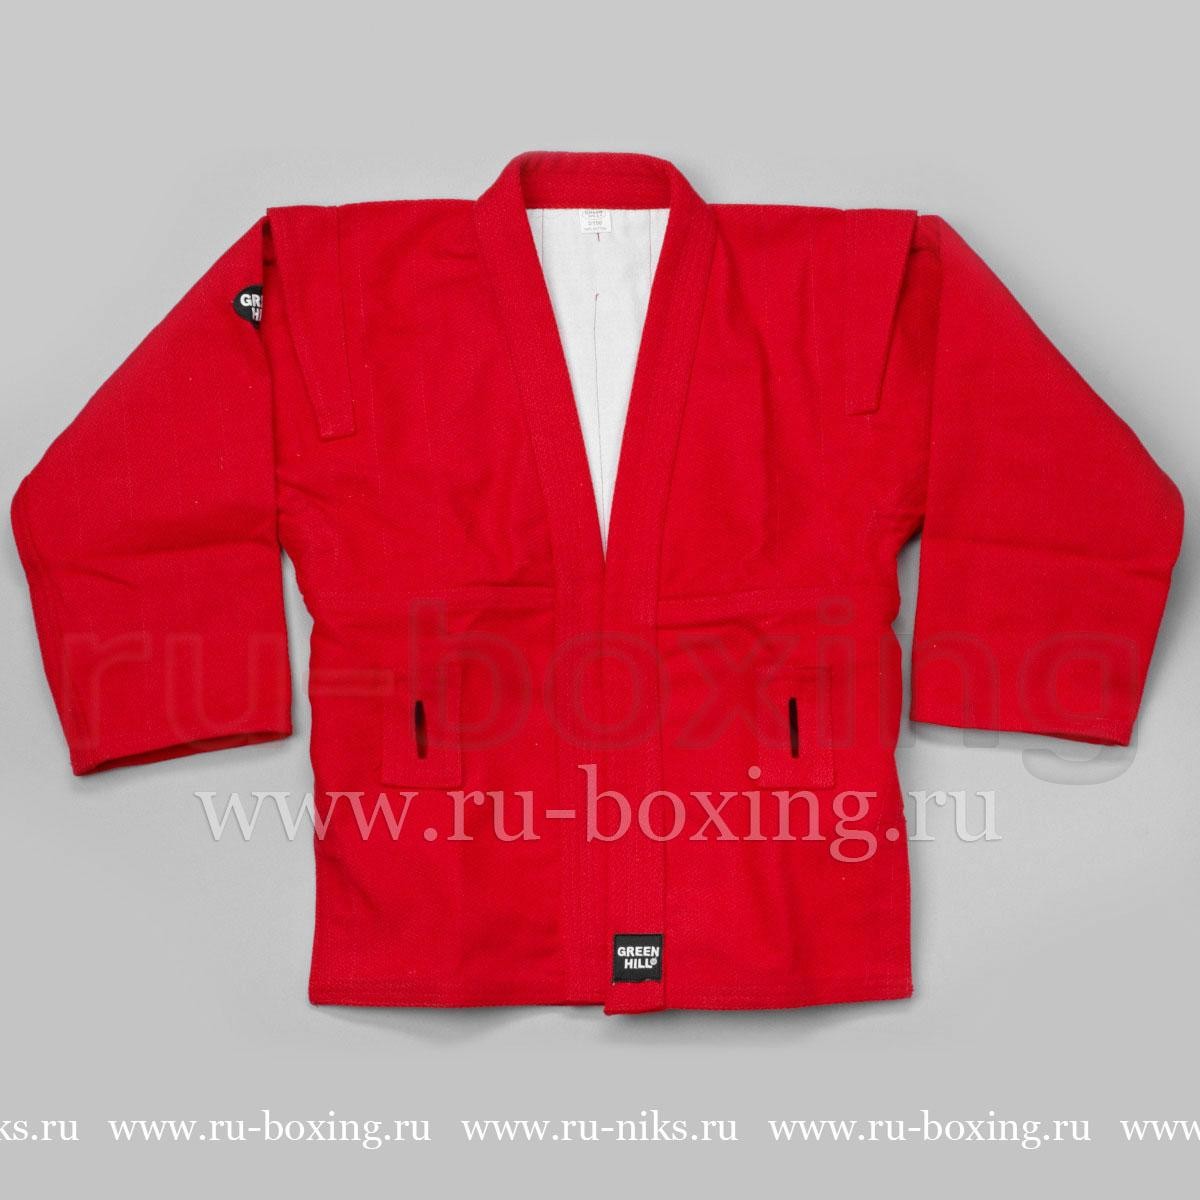 SSJ 10355 Куртка и трусы Самбо 150  красный